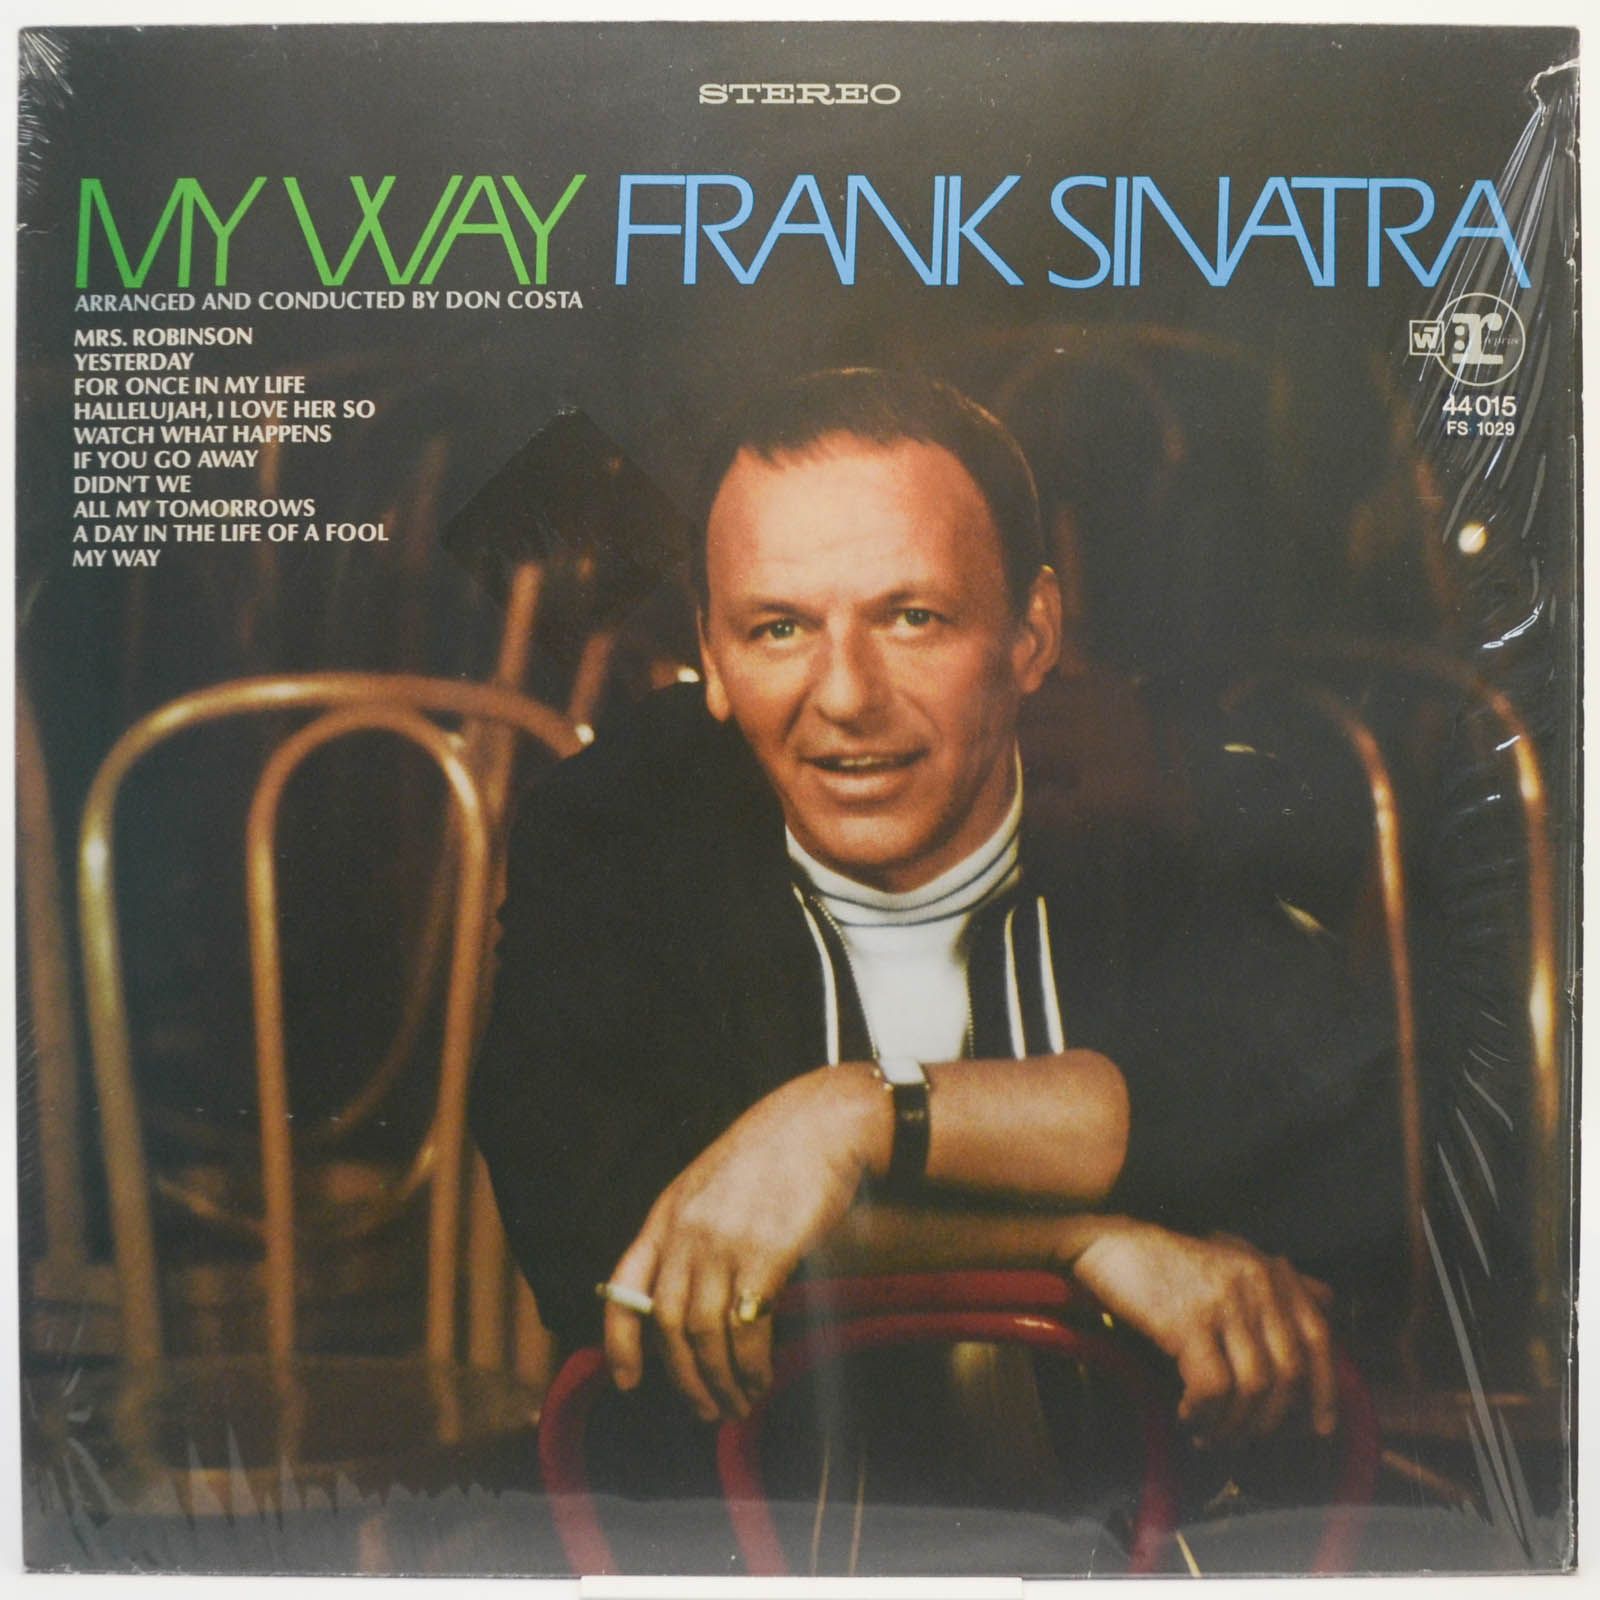 Frank Sinatra — My Way, 1969